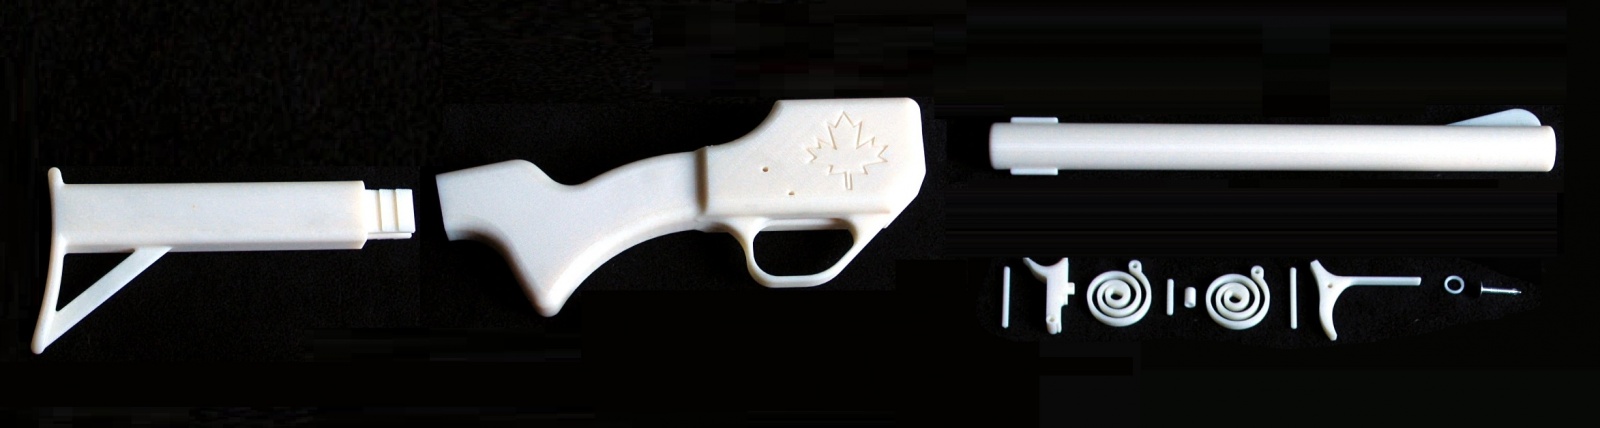 Огнестрельный DIY: история и перспективы 3D-печатного оружия - 5